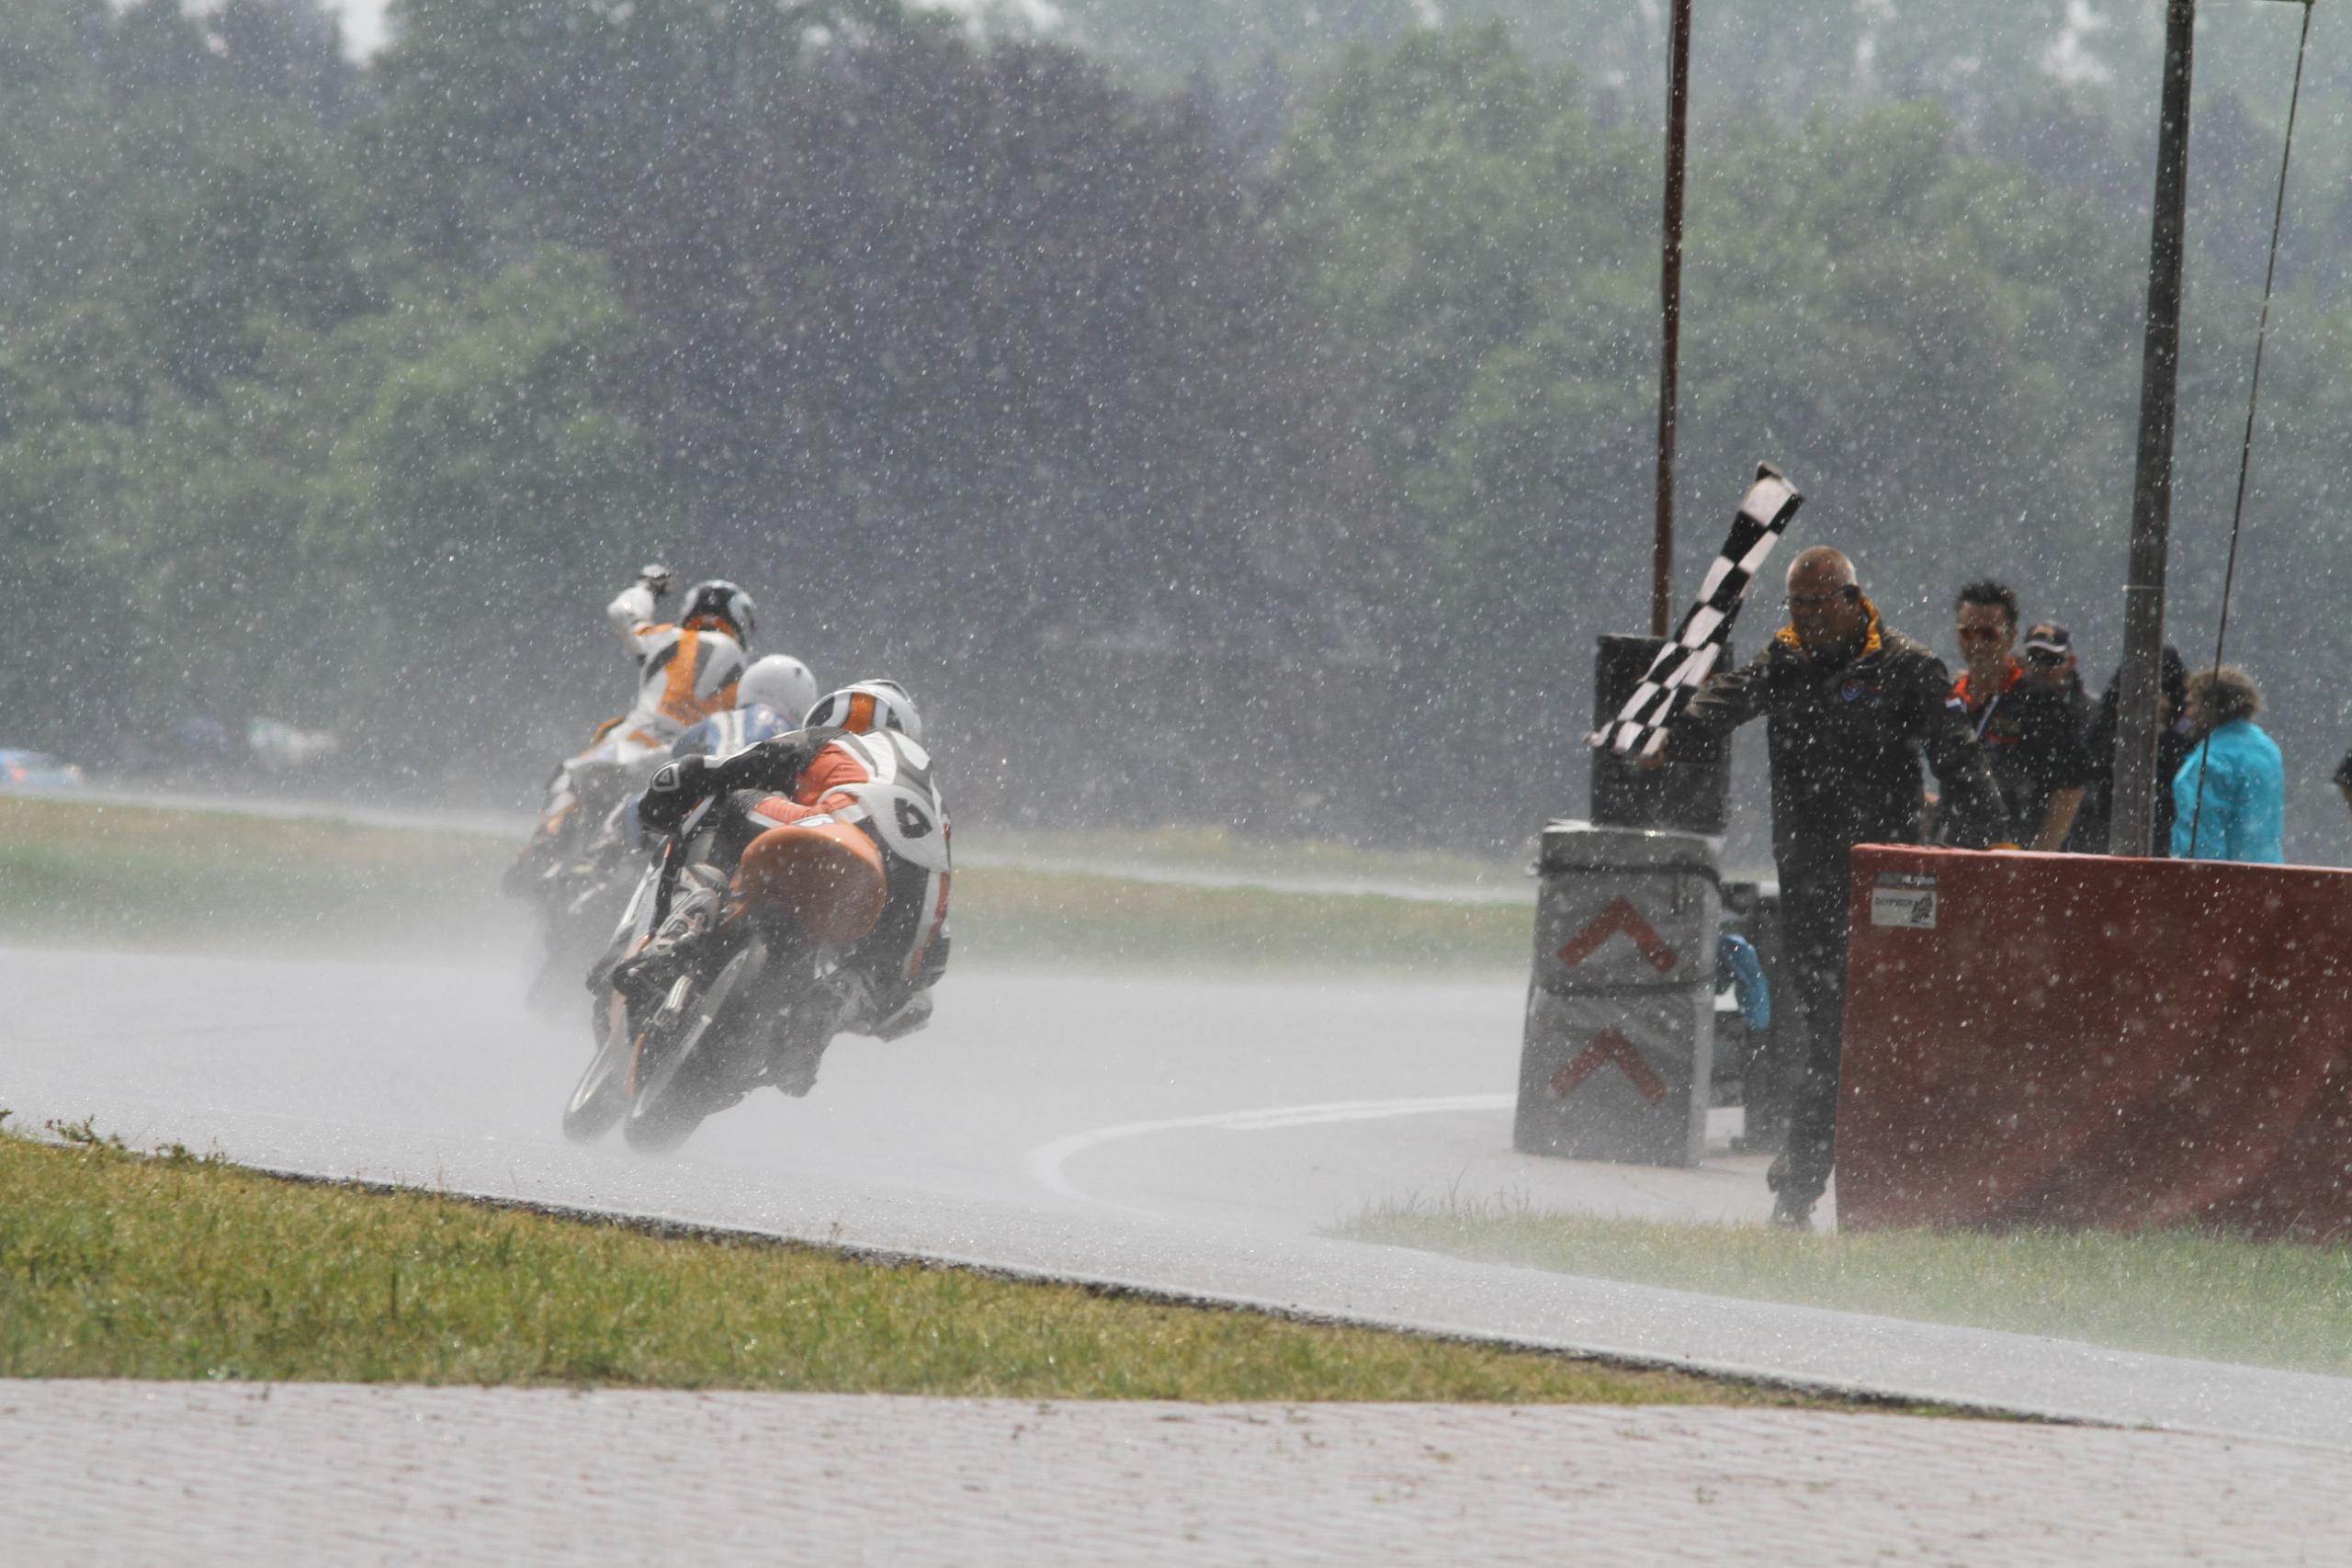 Bryan Schouten wint de 125cc-race in 2011 voor Scott Deroue en Jerry van de Bunt | Foto credit: Henk Teerink